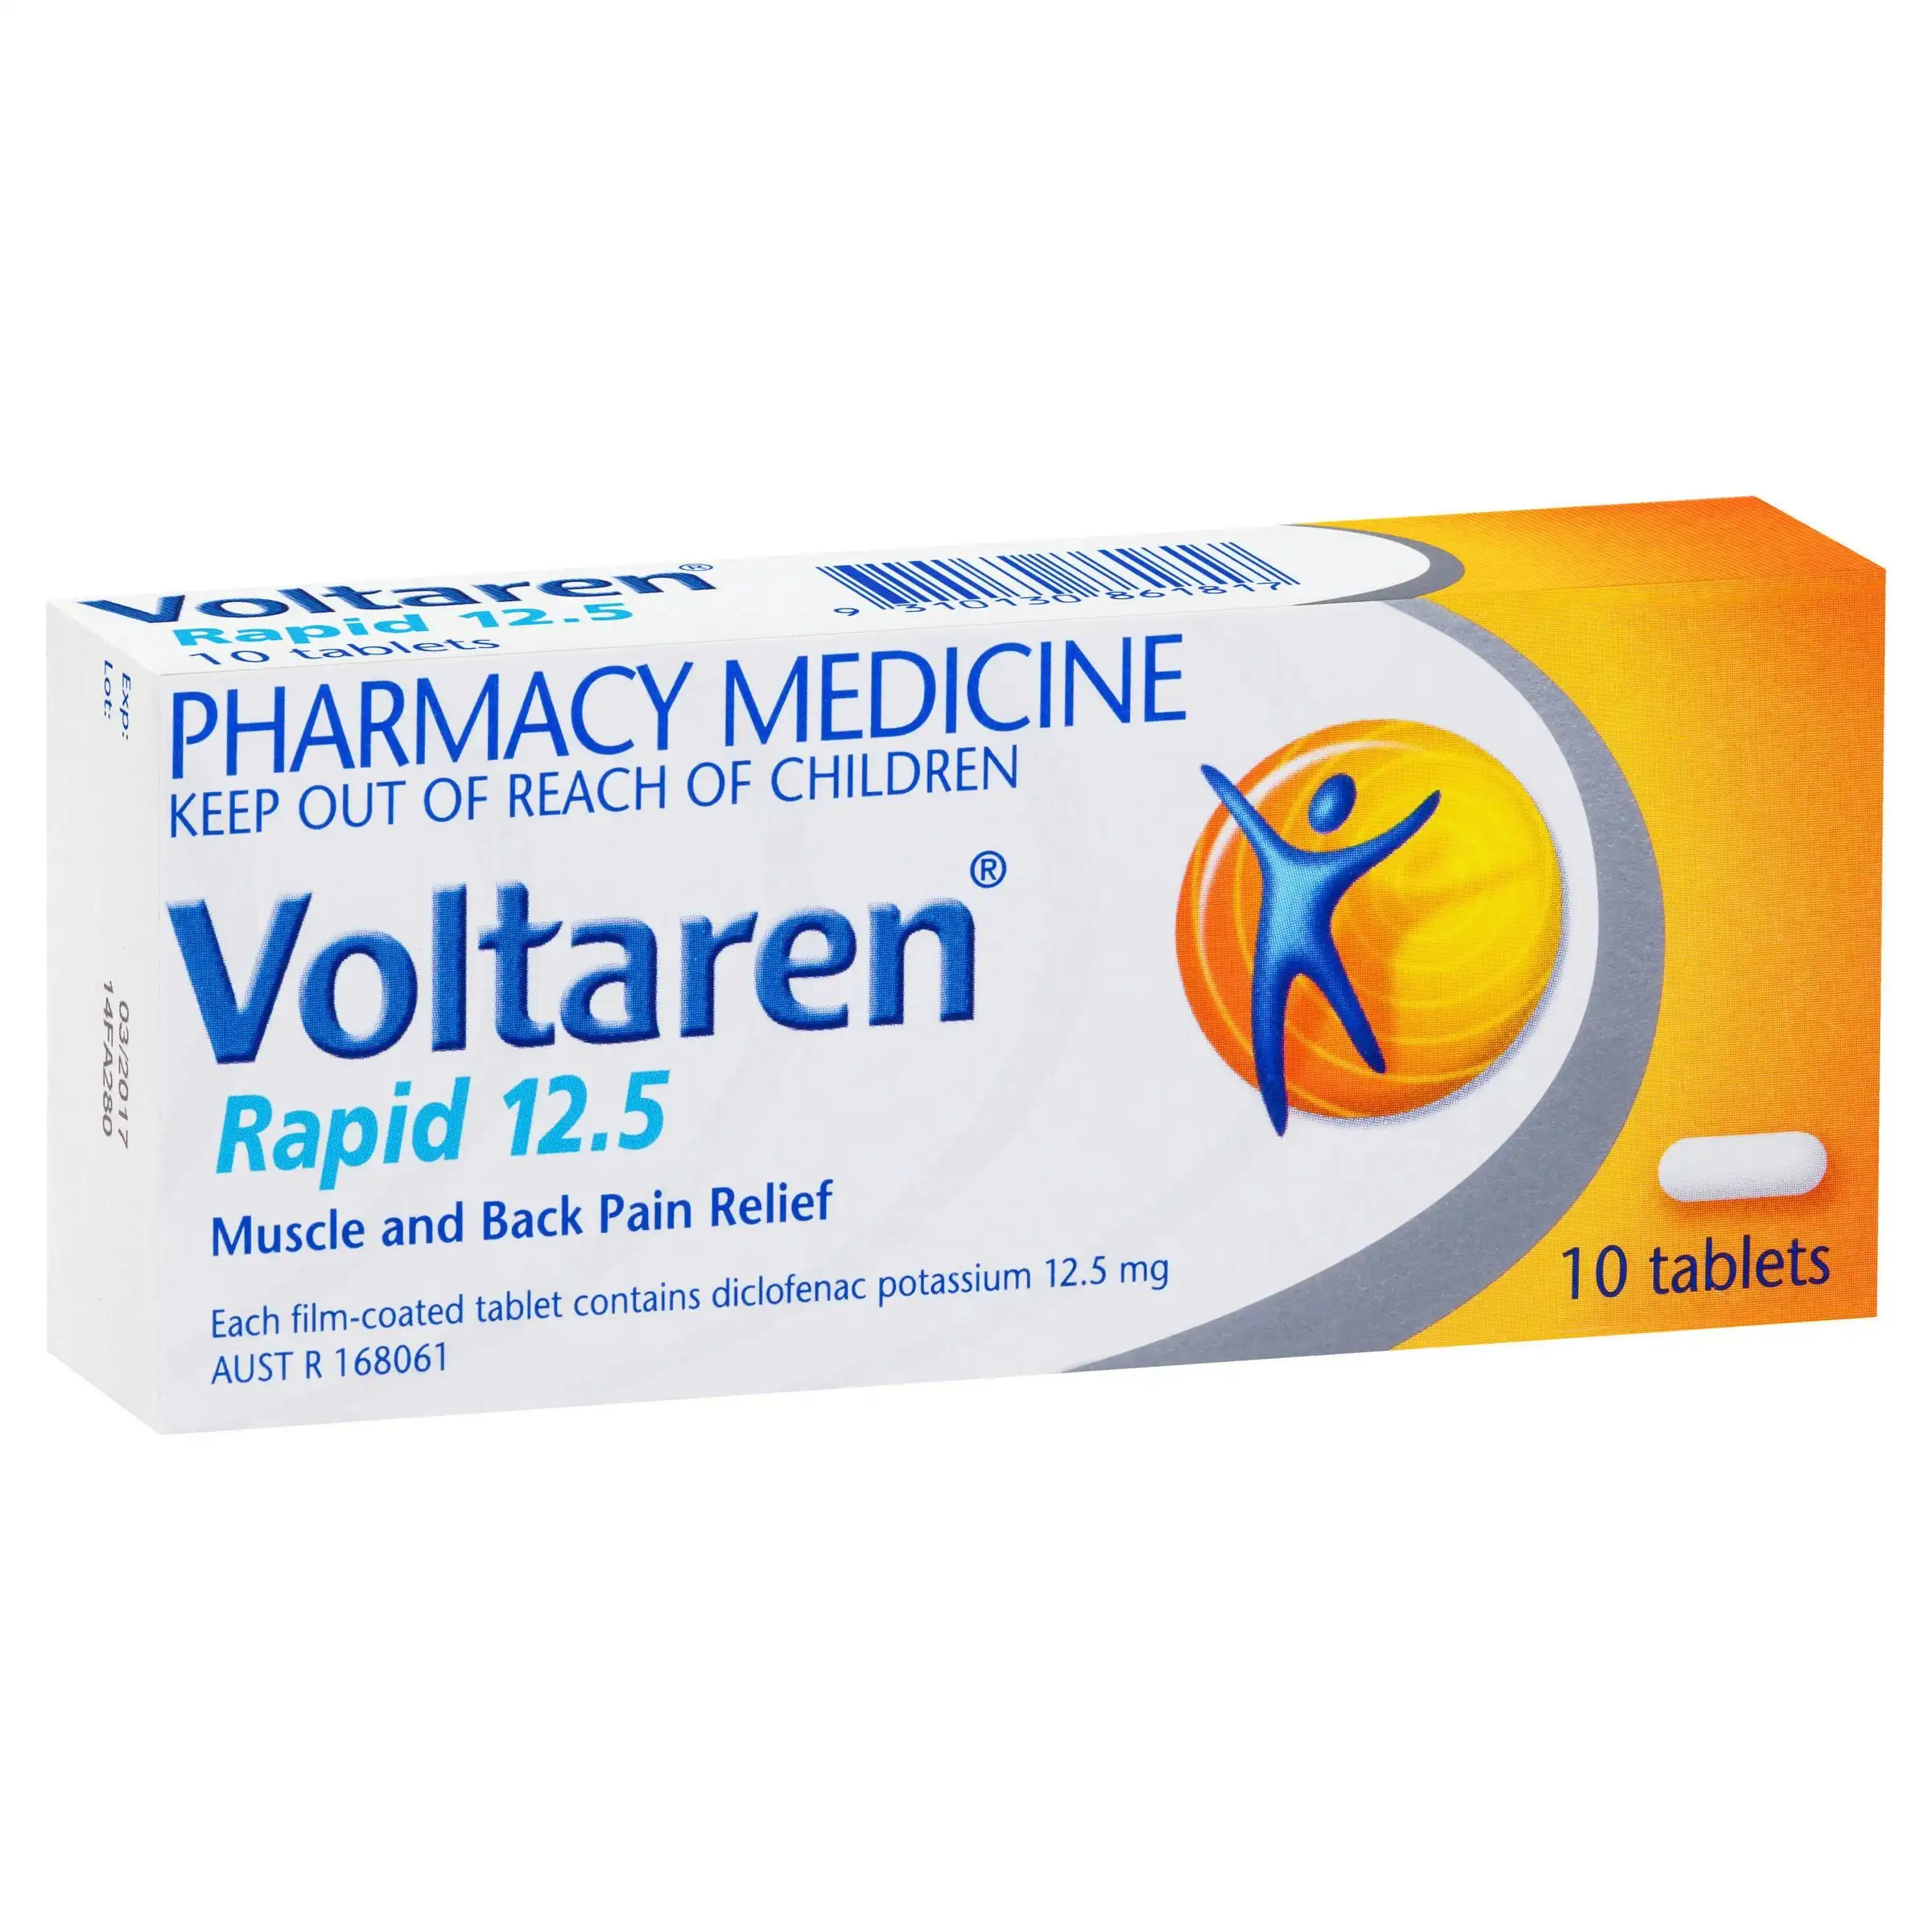 Voltaren Rapid 12.5, Pain Relief 10 Tablets